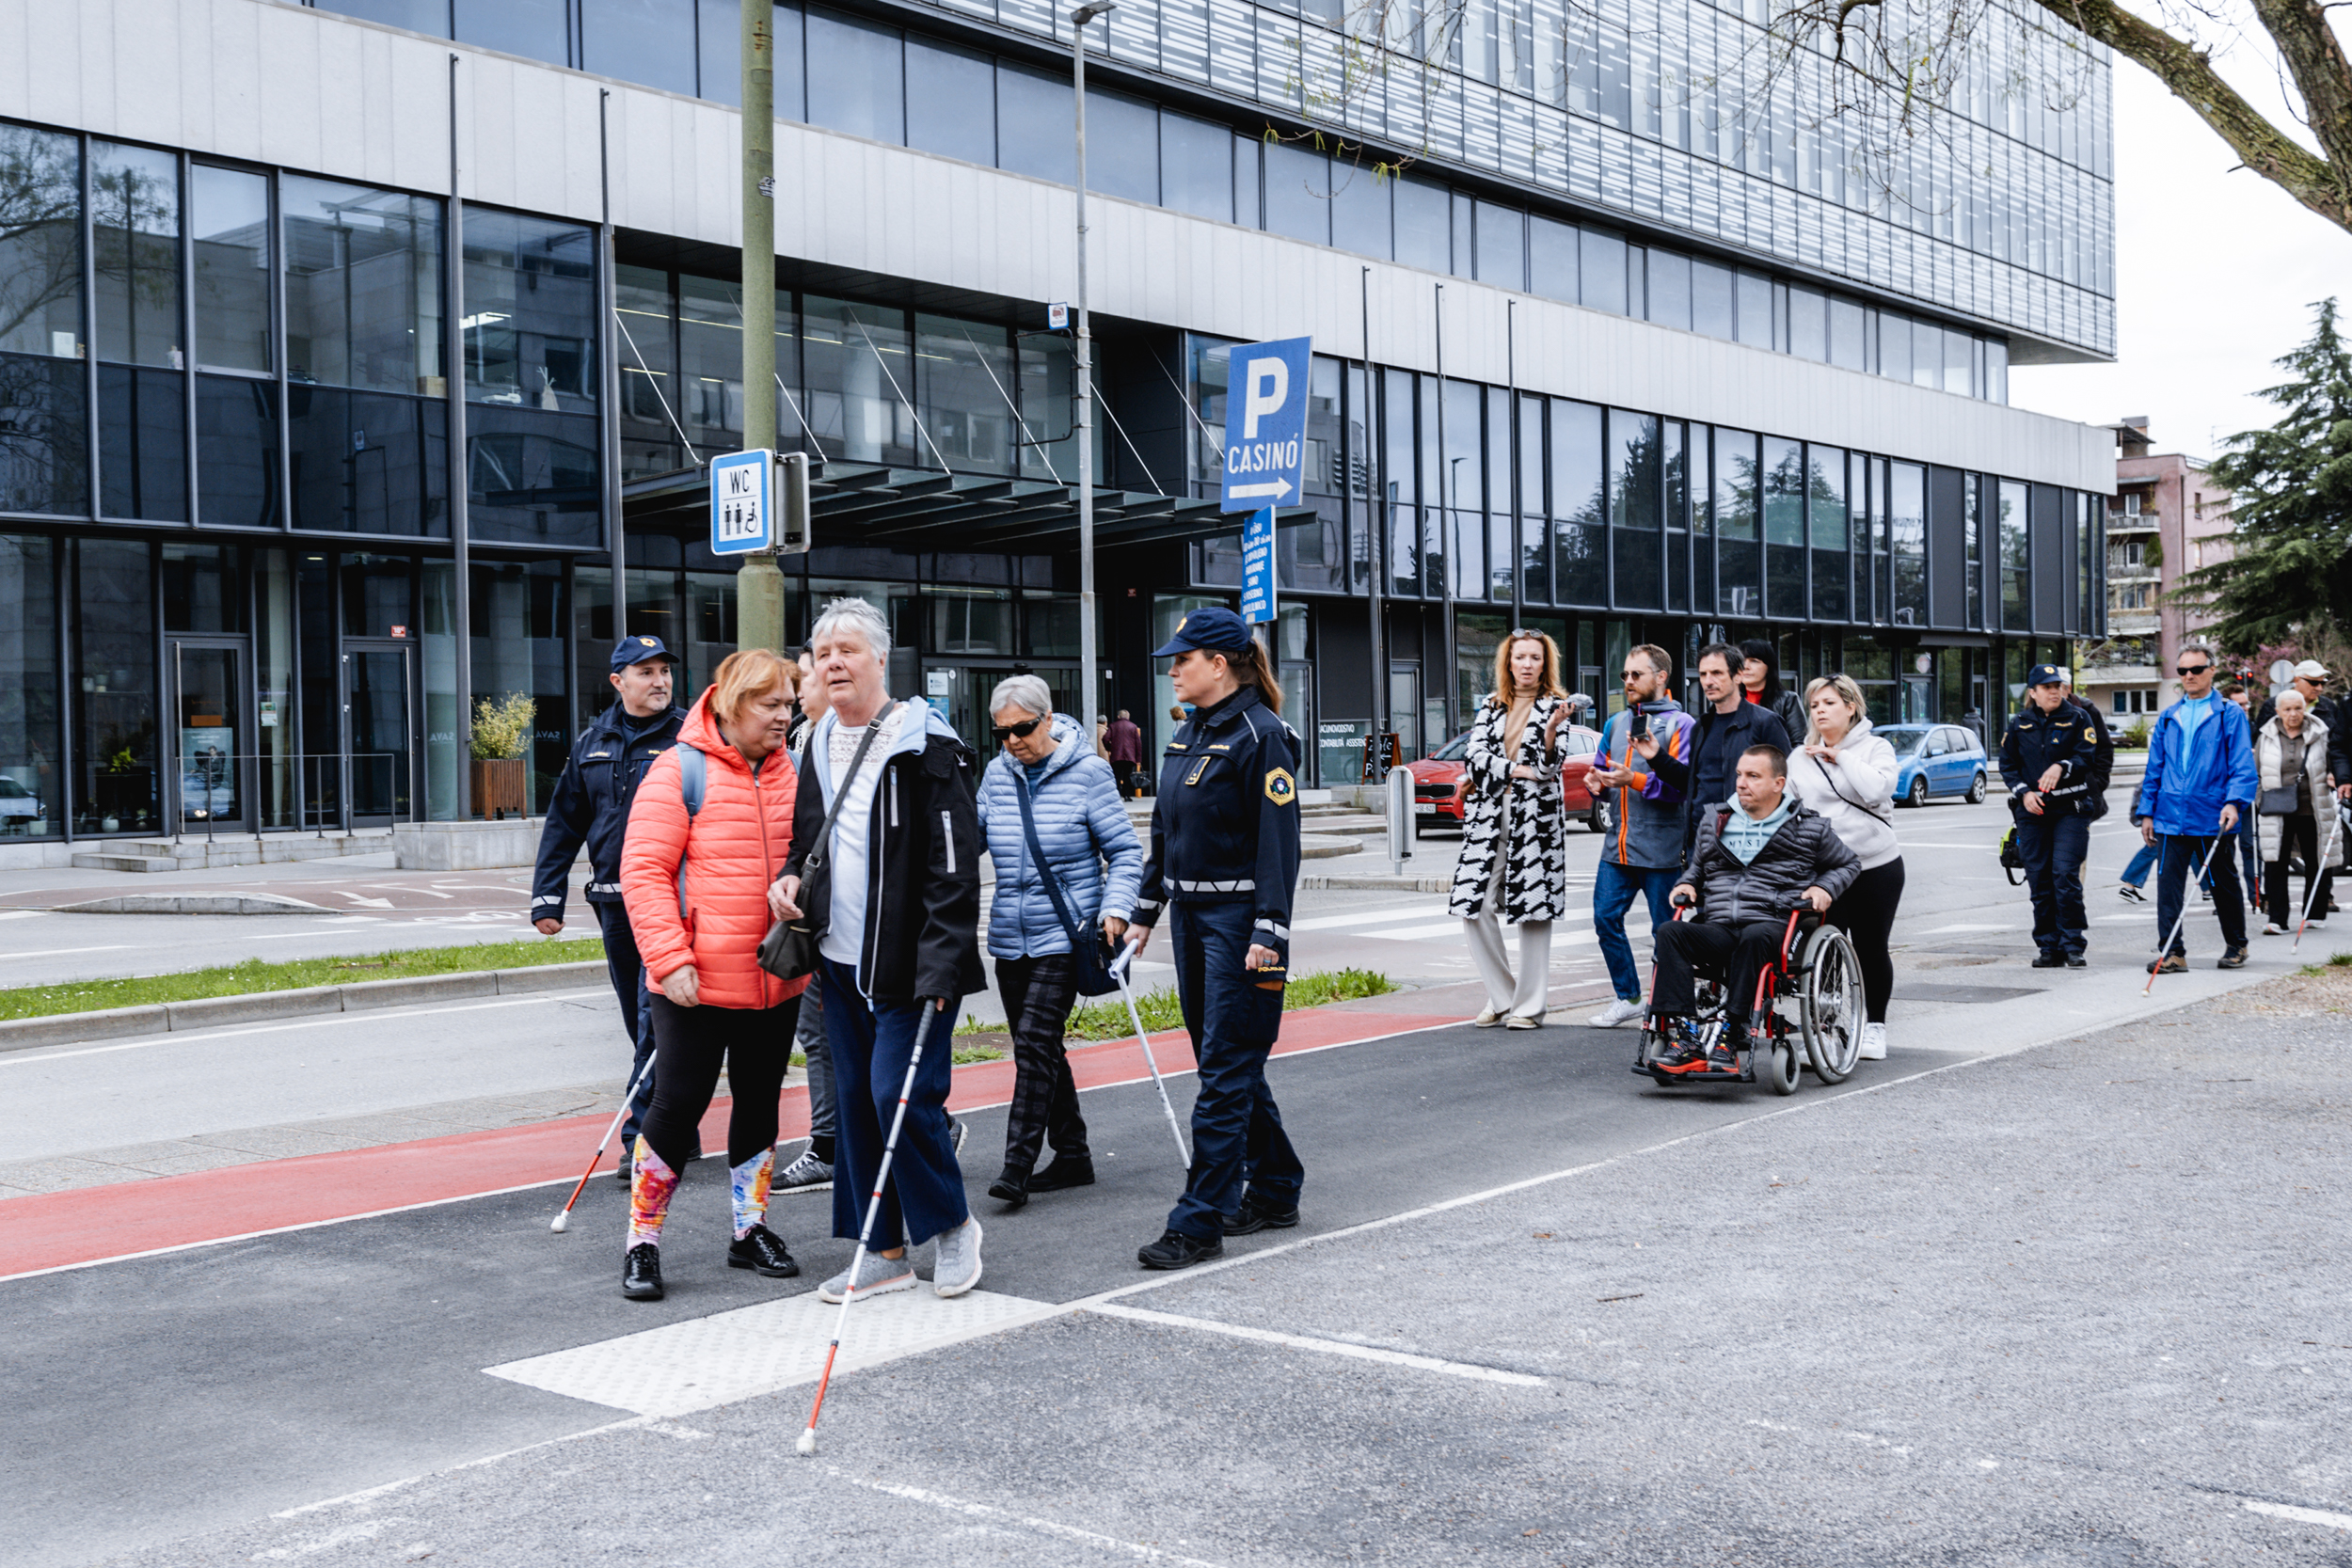 Skupina slepih in slabovidnih ter druge gibalno ovirane osebe hodijo po pločniku v Novi Gorici. Osebe imajo v rokah bele palice. Skupino spremljajo policisti v uniformah, ki skrbijo za varnost teh oseb v cestnem prometu.